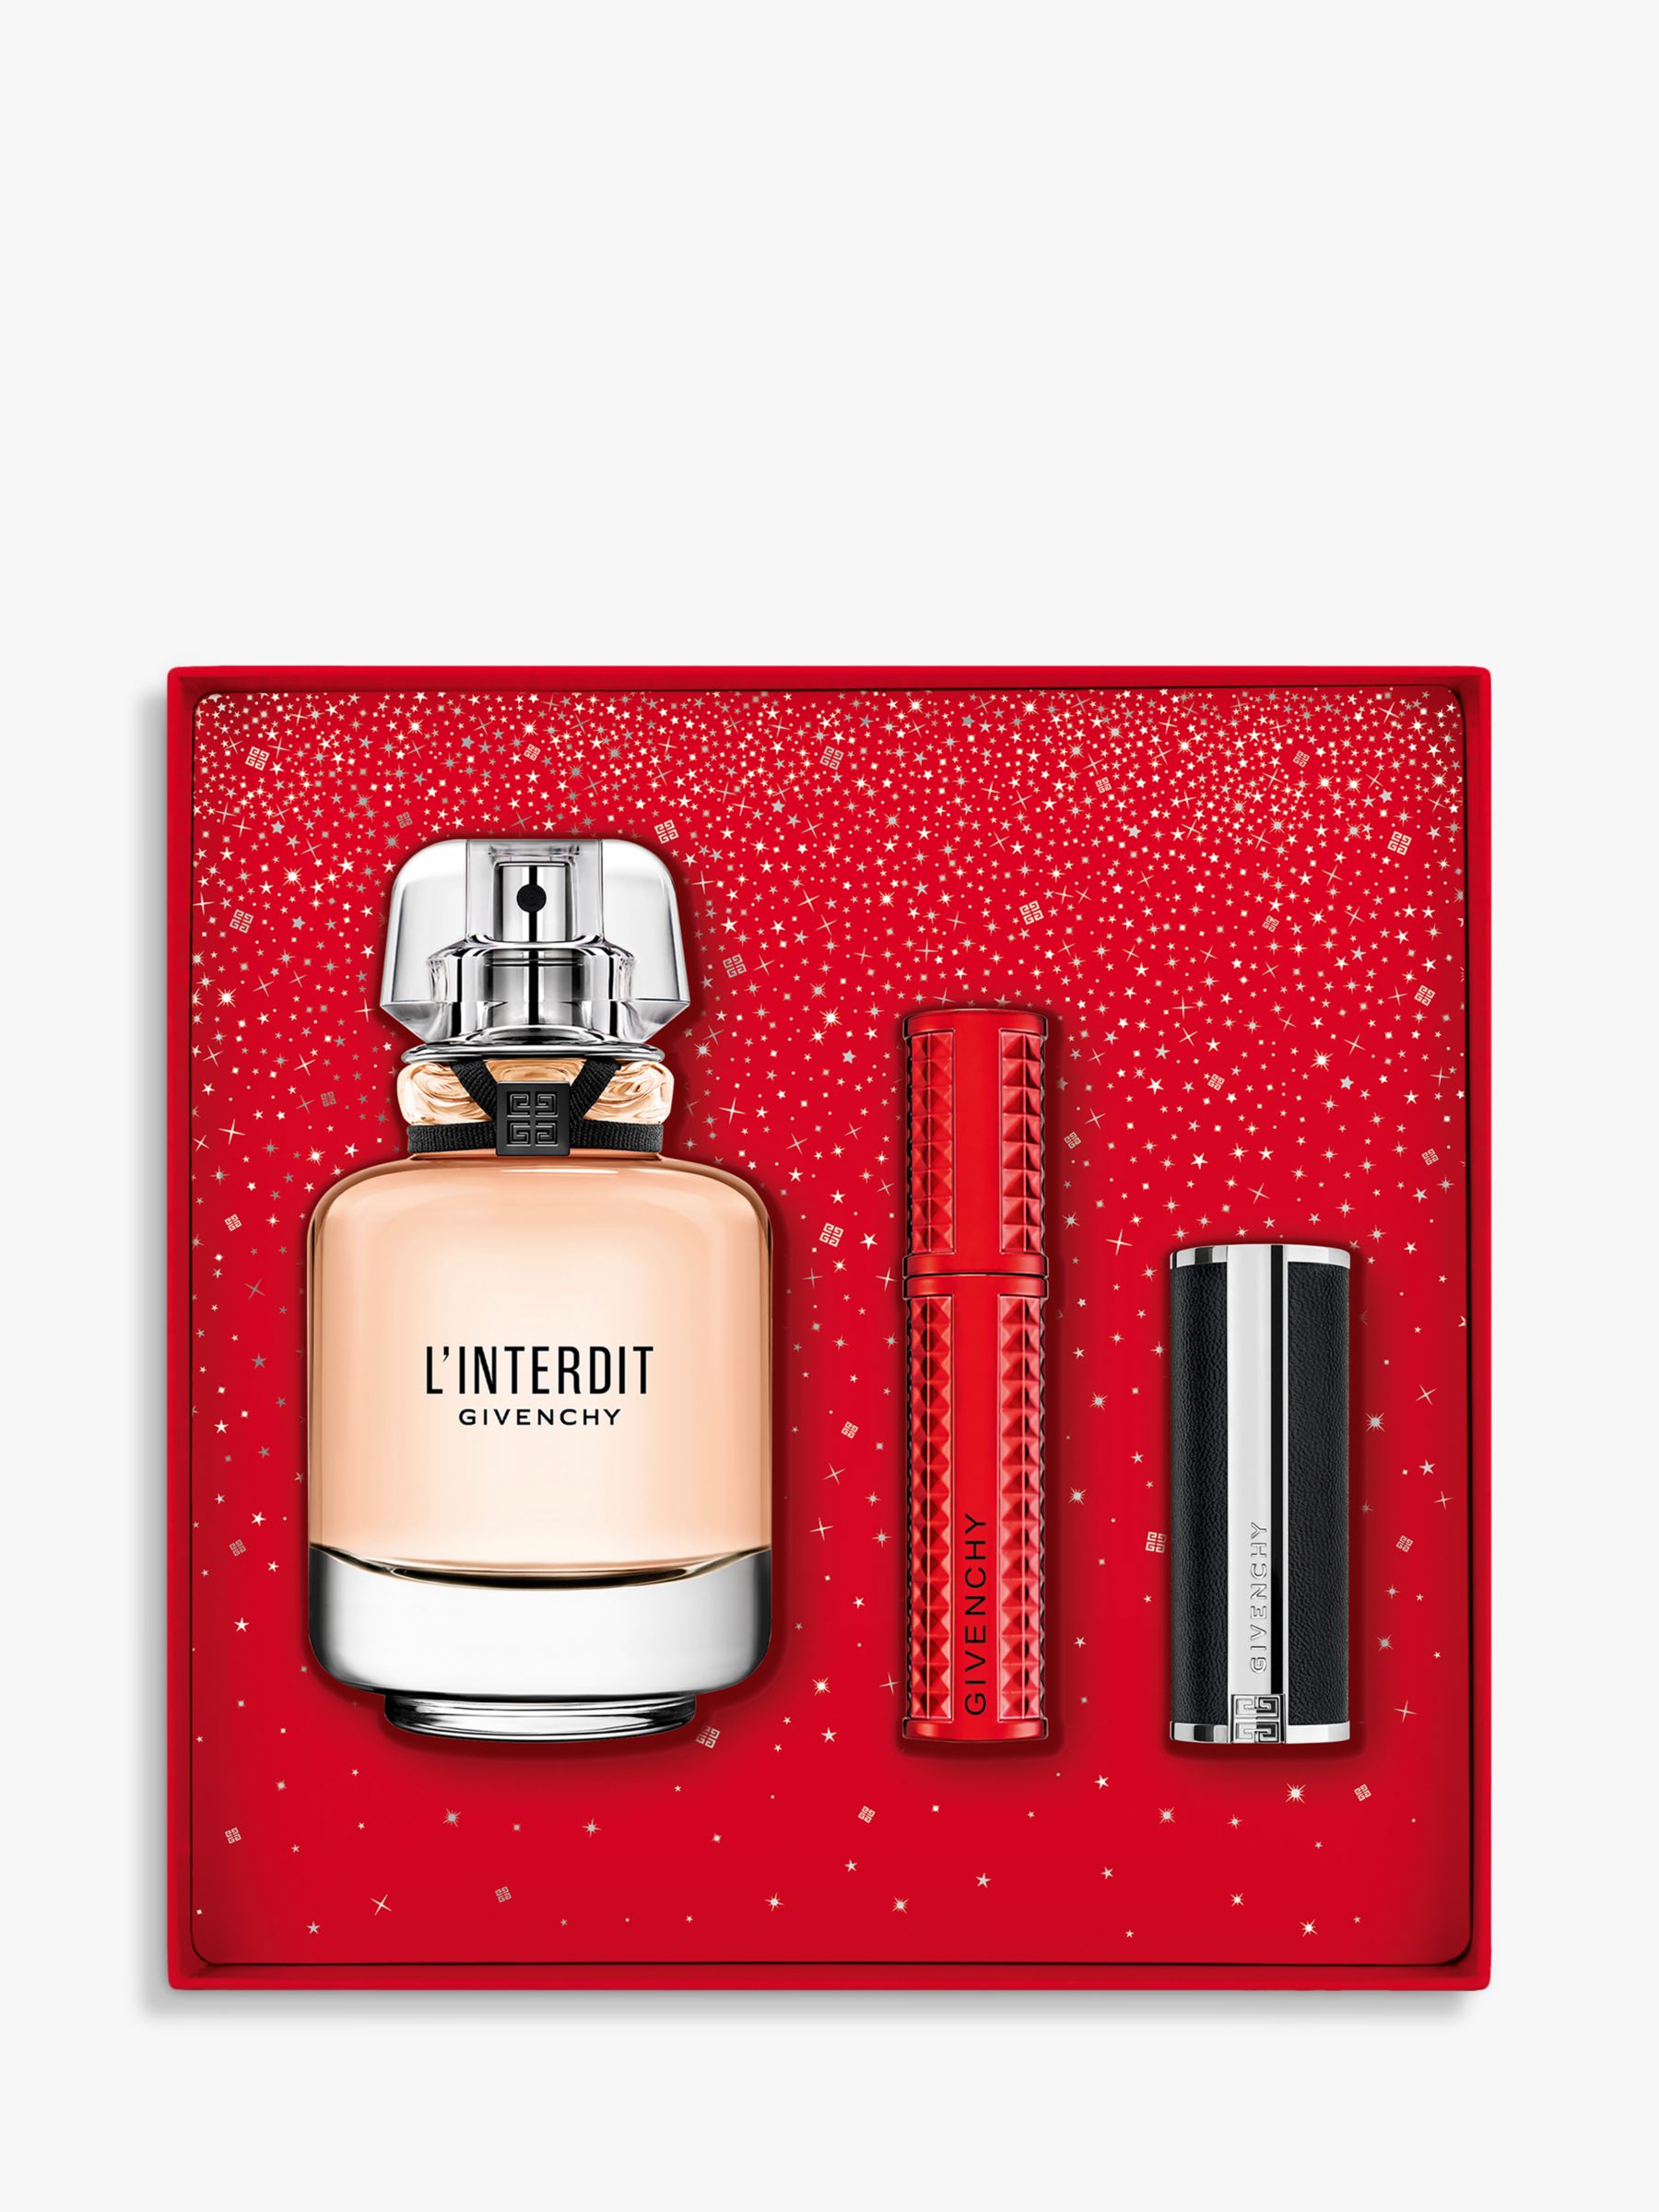 Givenchy L'Interdit Eau de Parfum 50ml Fragrance Gift Set